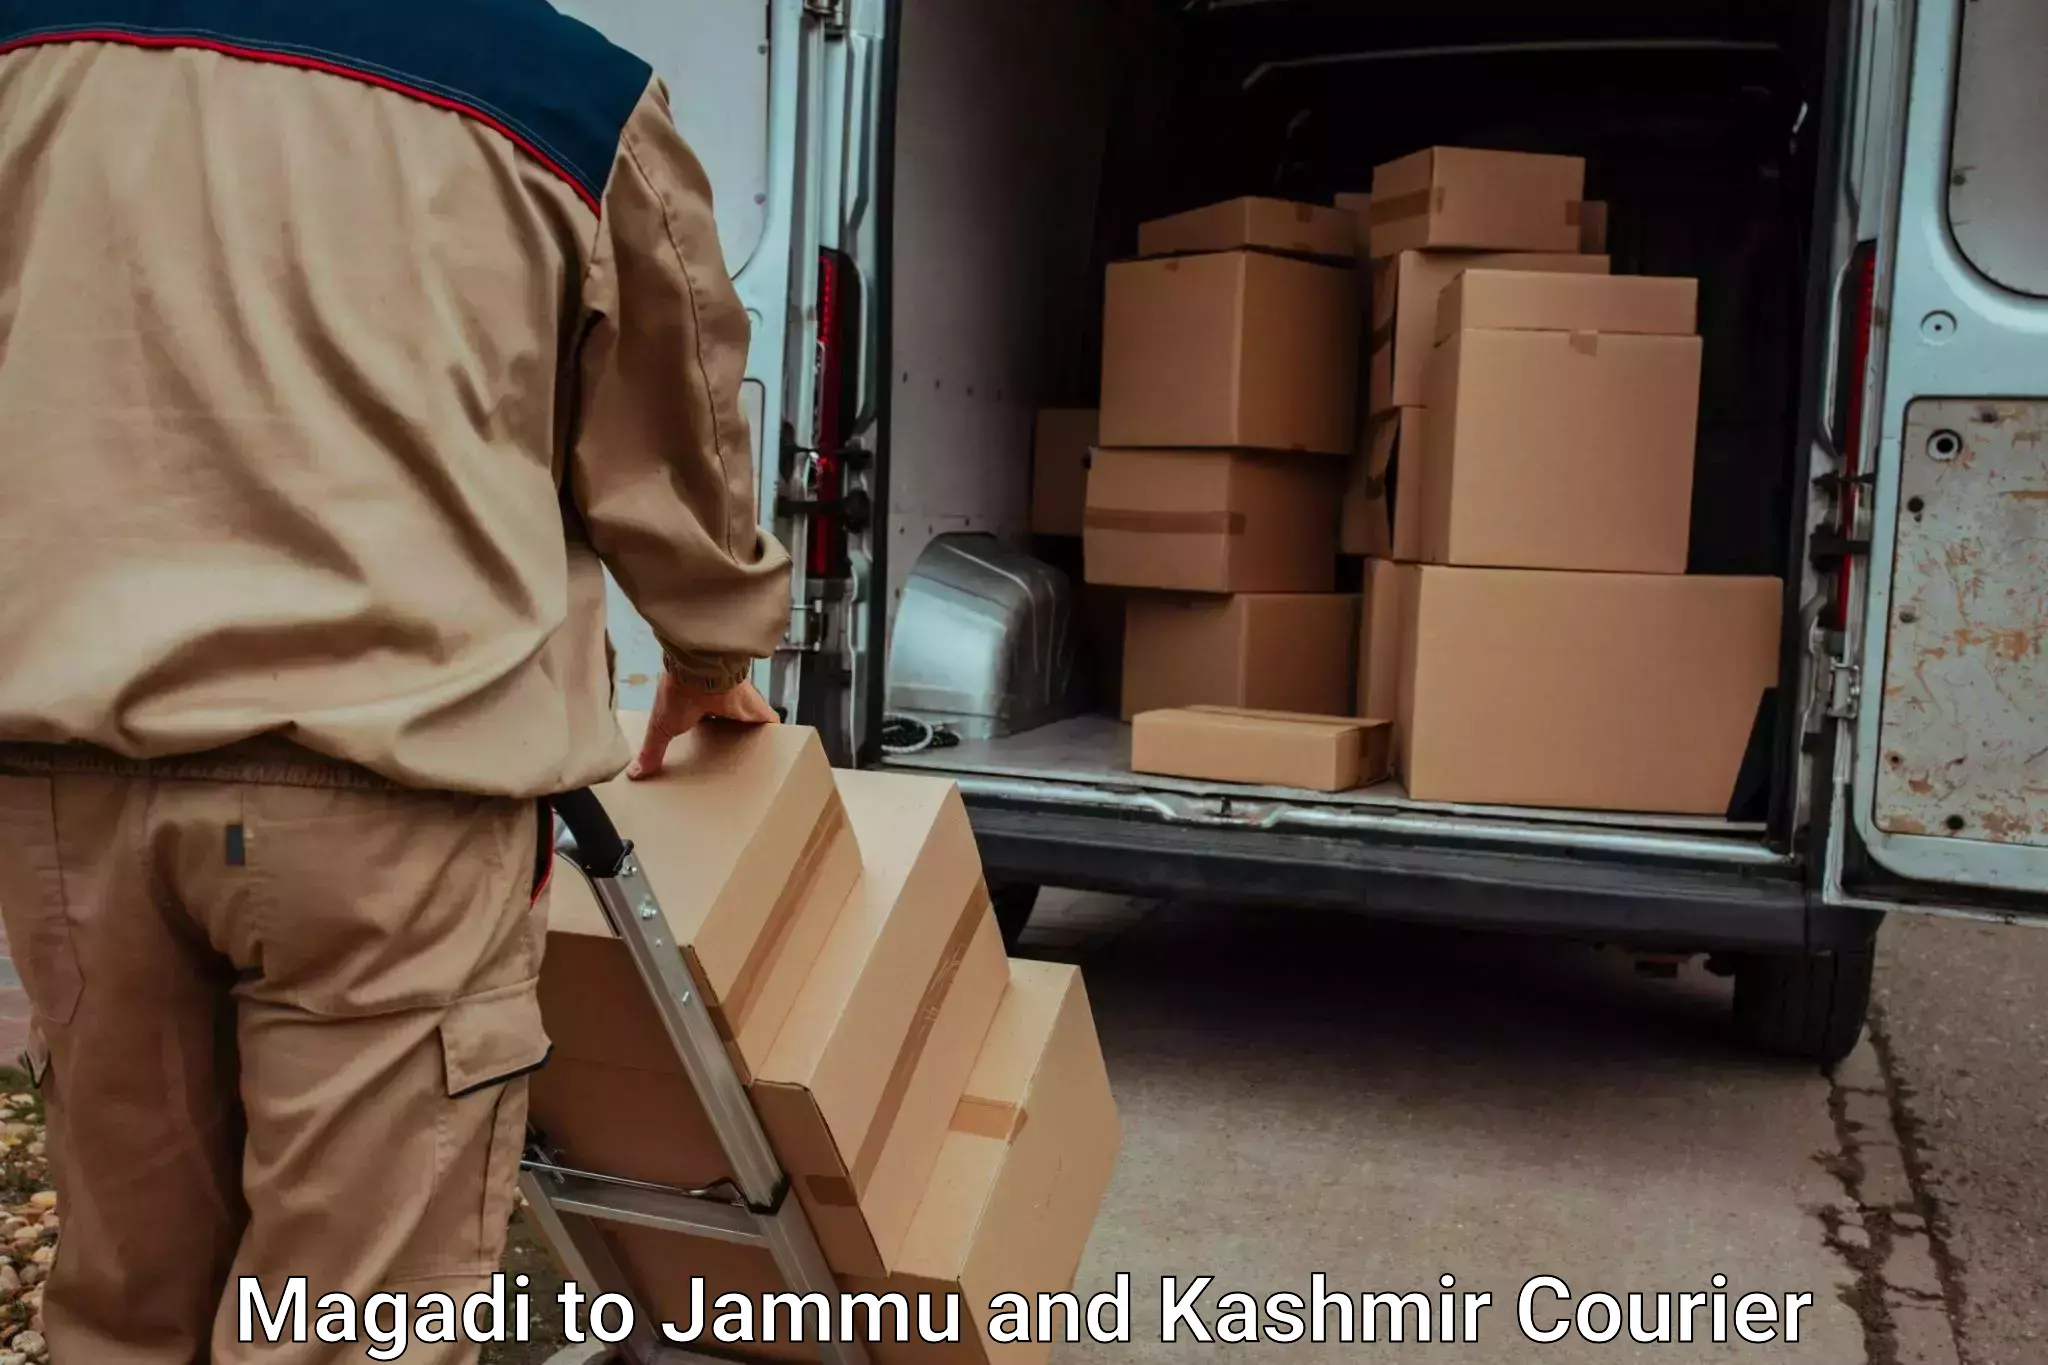 Urgent luggage shipment Magadi to Bandipur